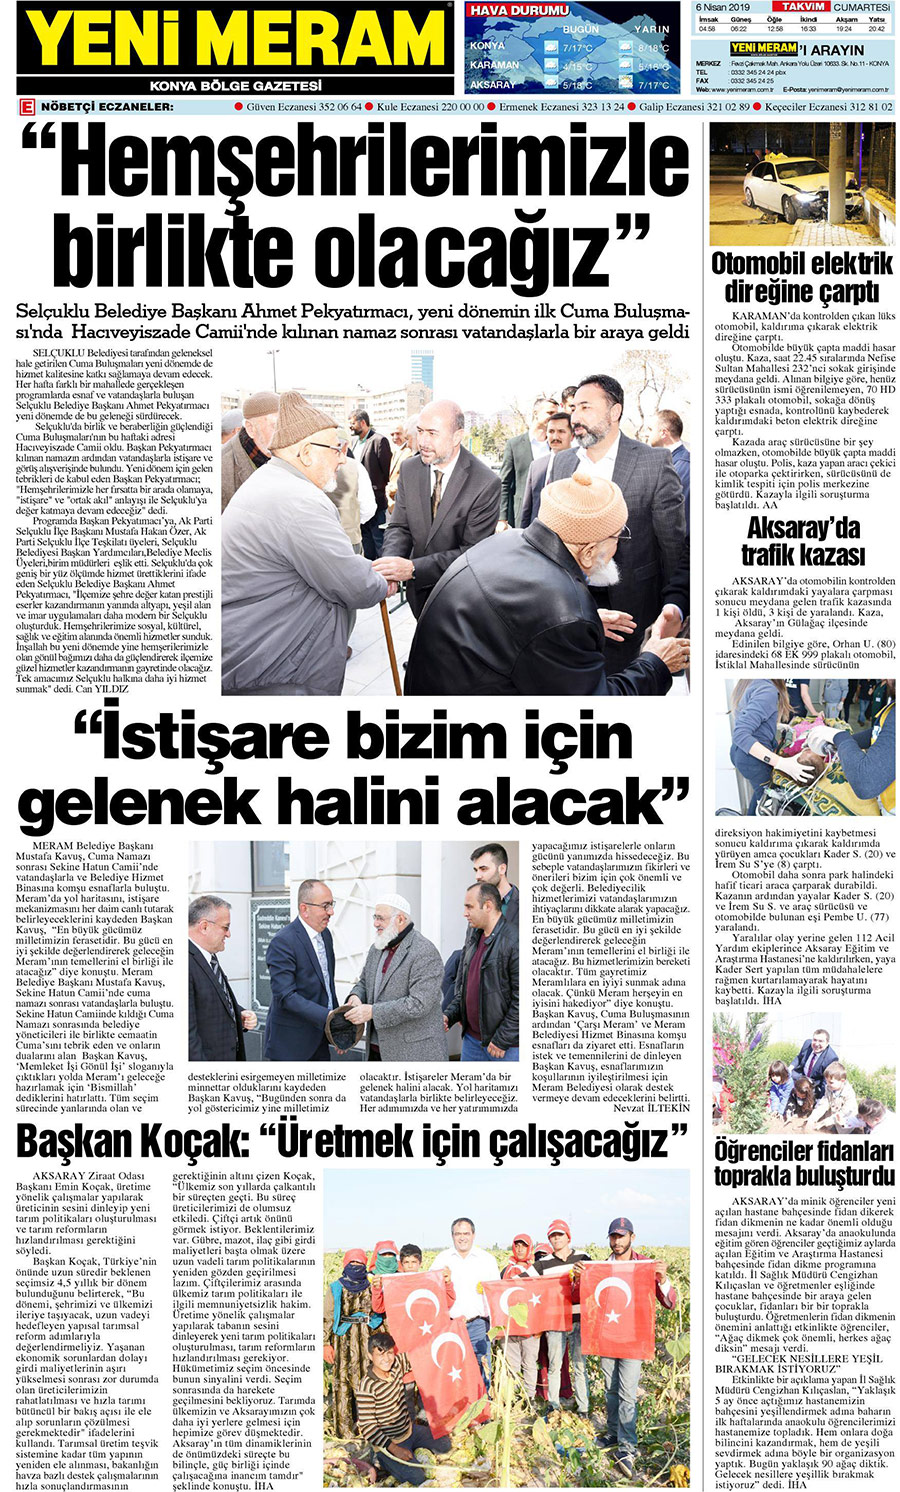 6 Nisan 2019 Yeni Meram Gazetesi